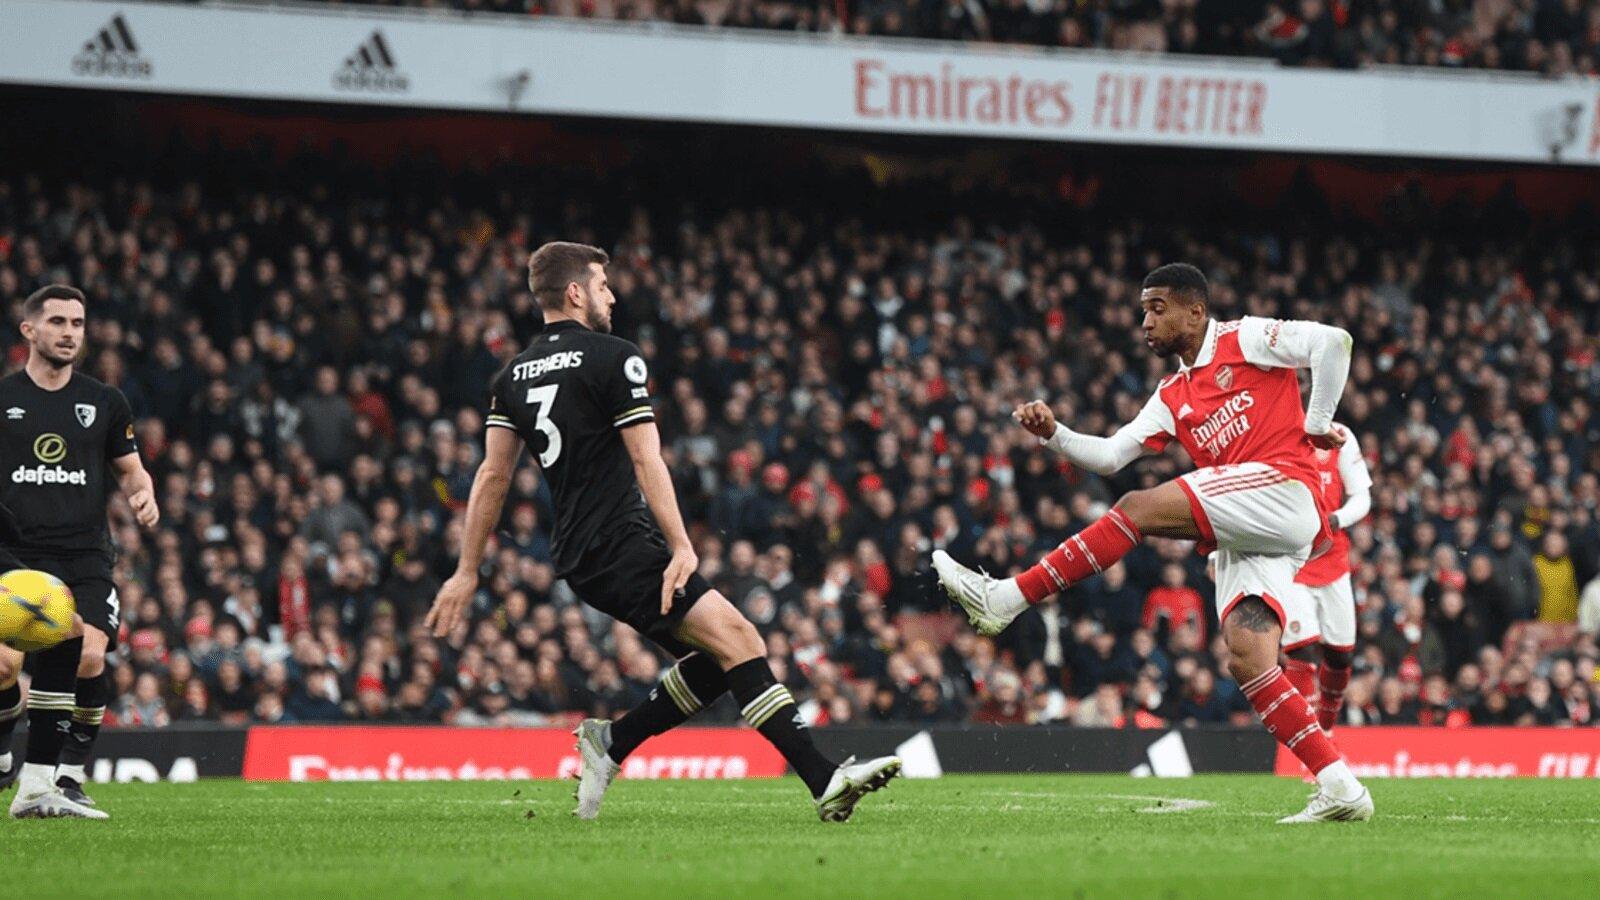 Reiss Nelson có pha ra chân cực nhanh ấn định tỉ số cho Arsenal ở những giây cuối cùng của hiệp đấu (Ảnh: Internet)